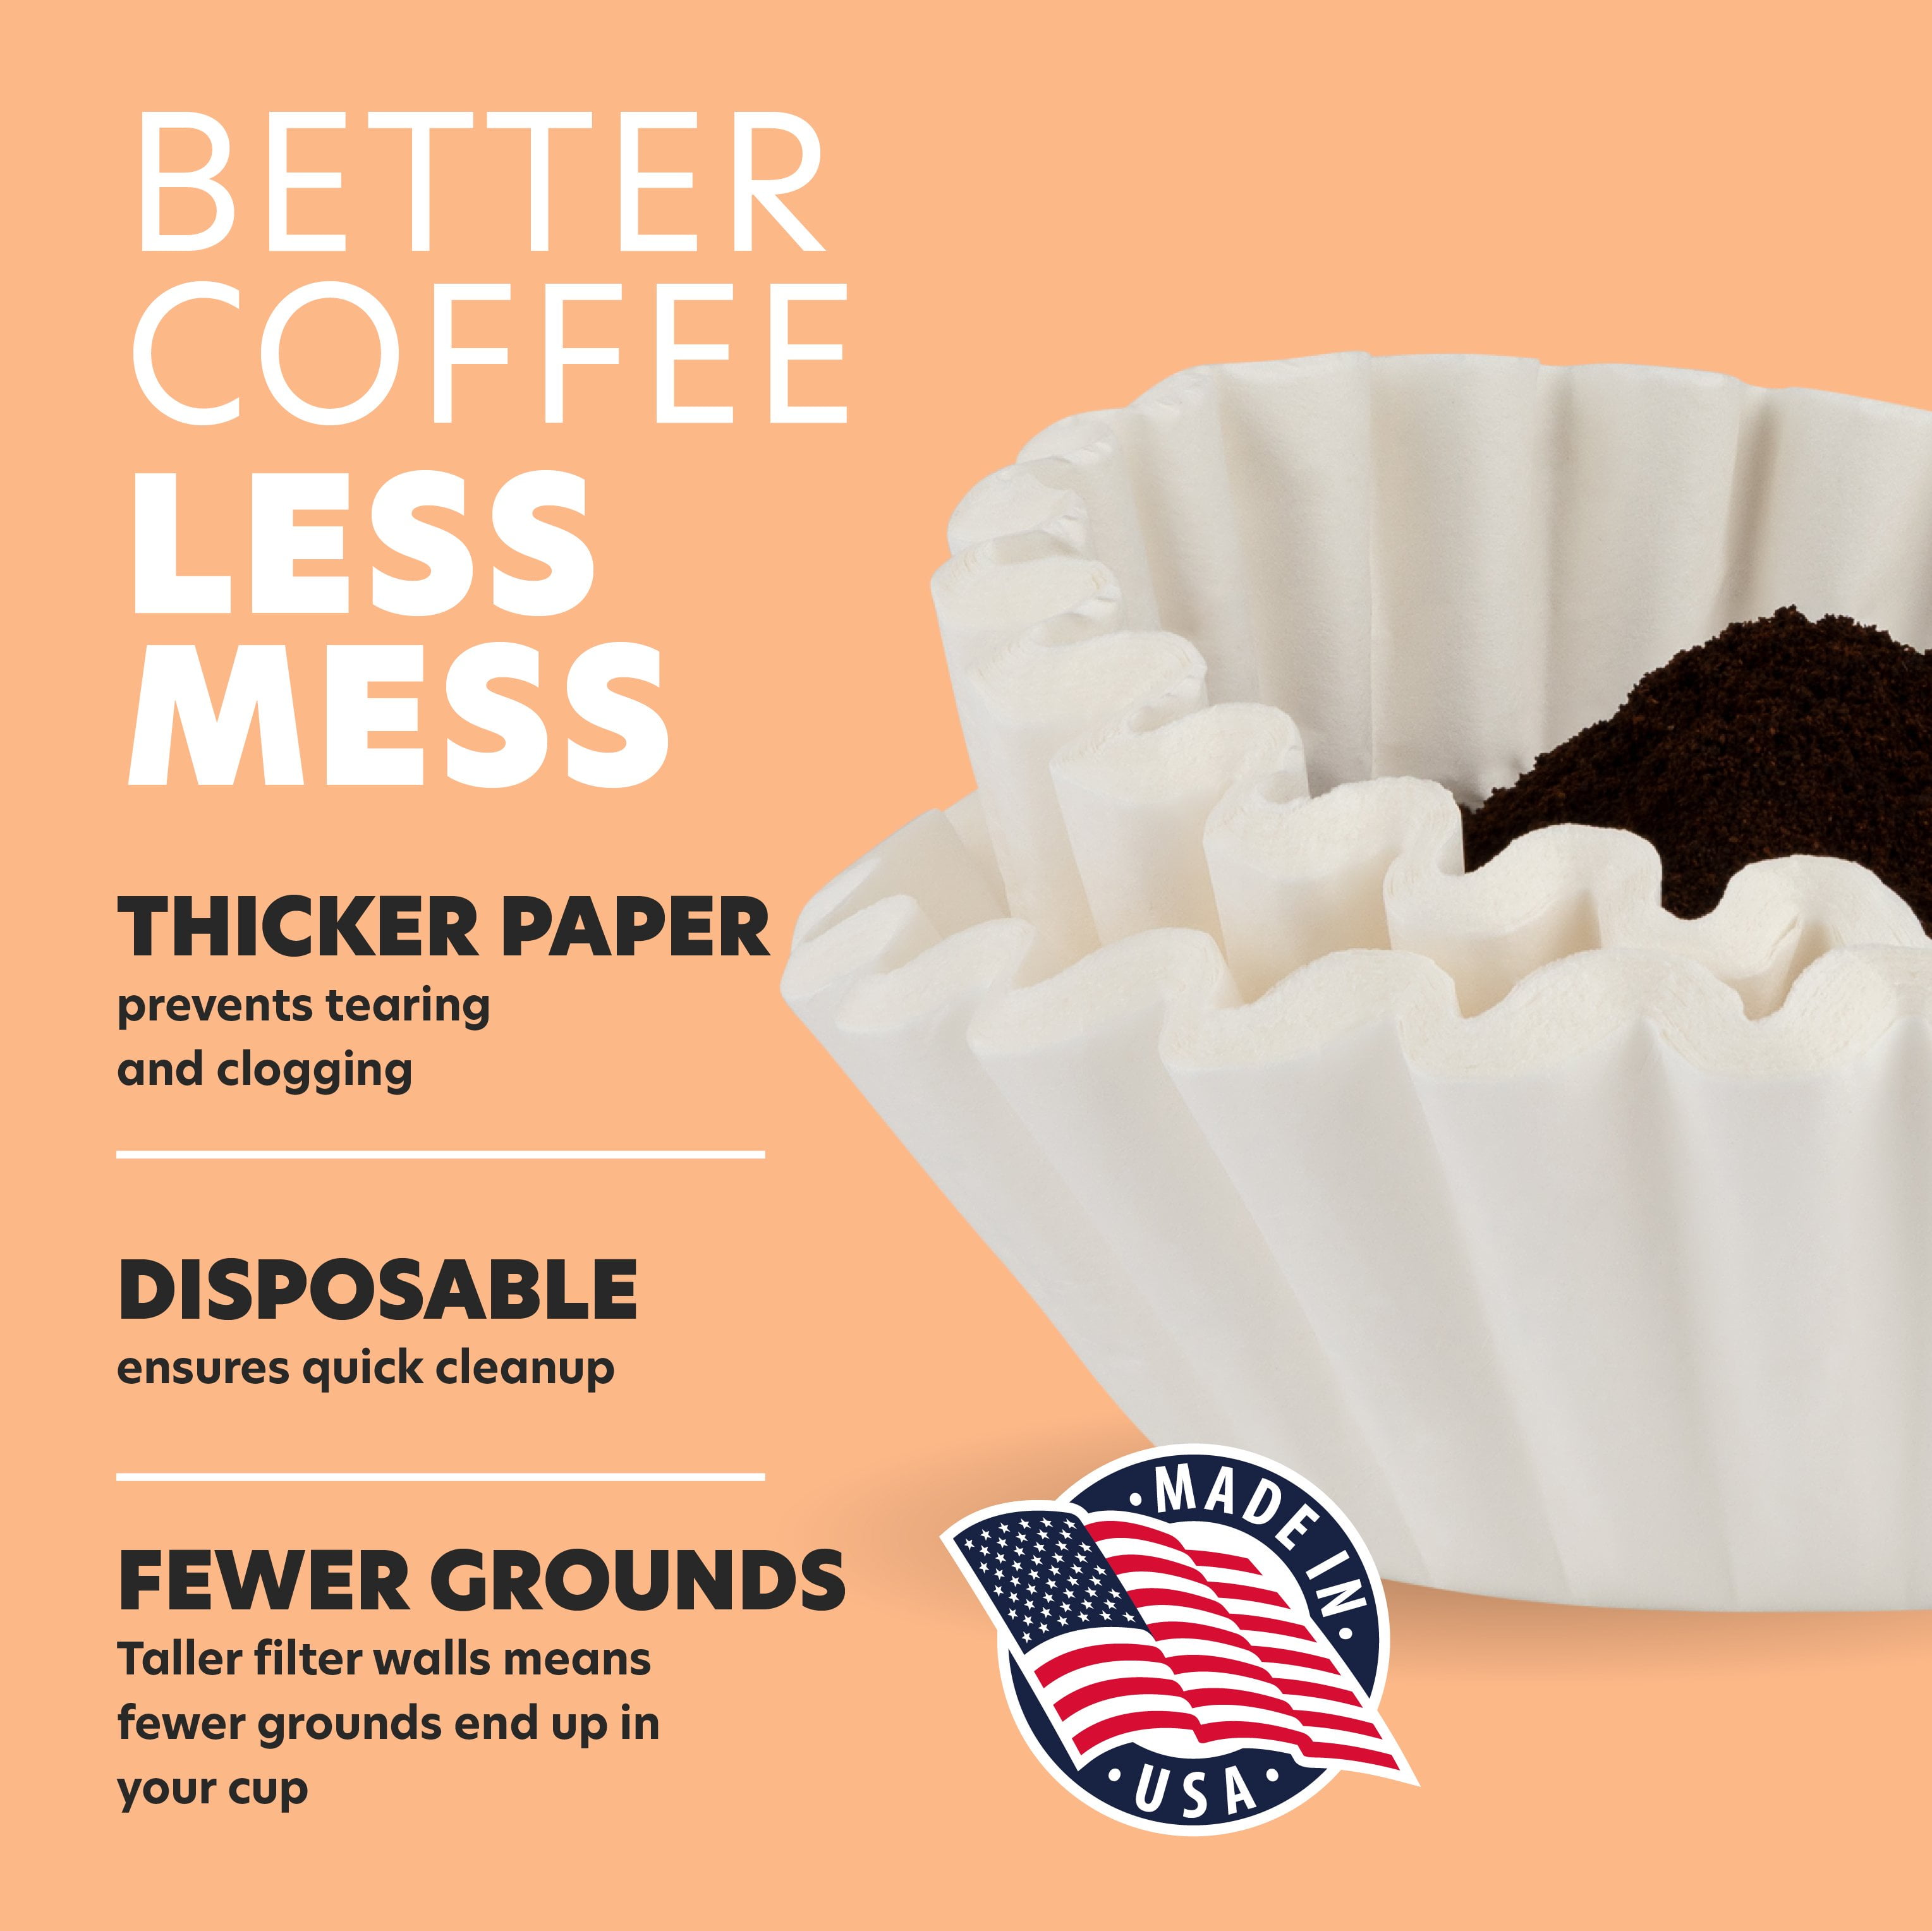 60 COLDBREW Coffee Filters + the Click 111 – finumus